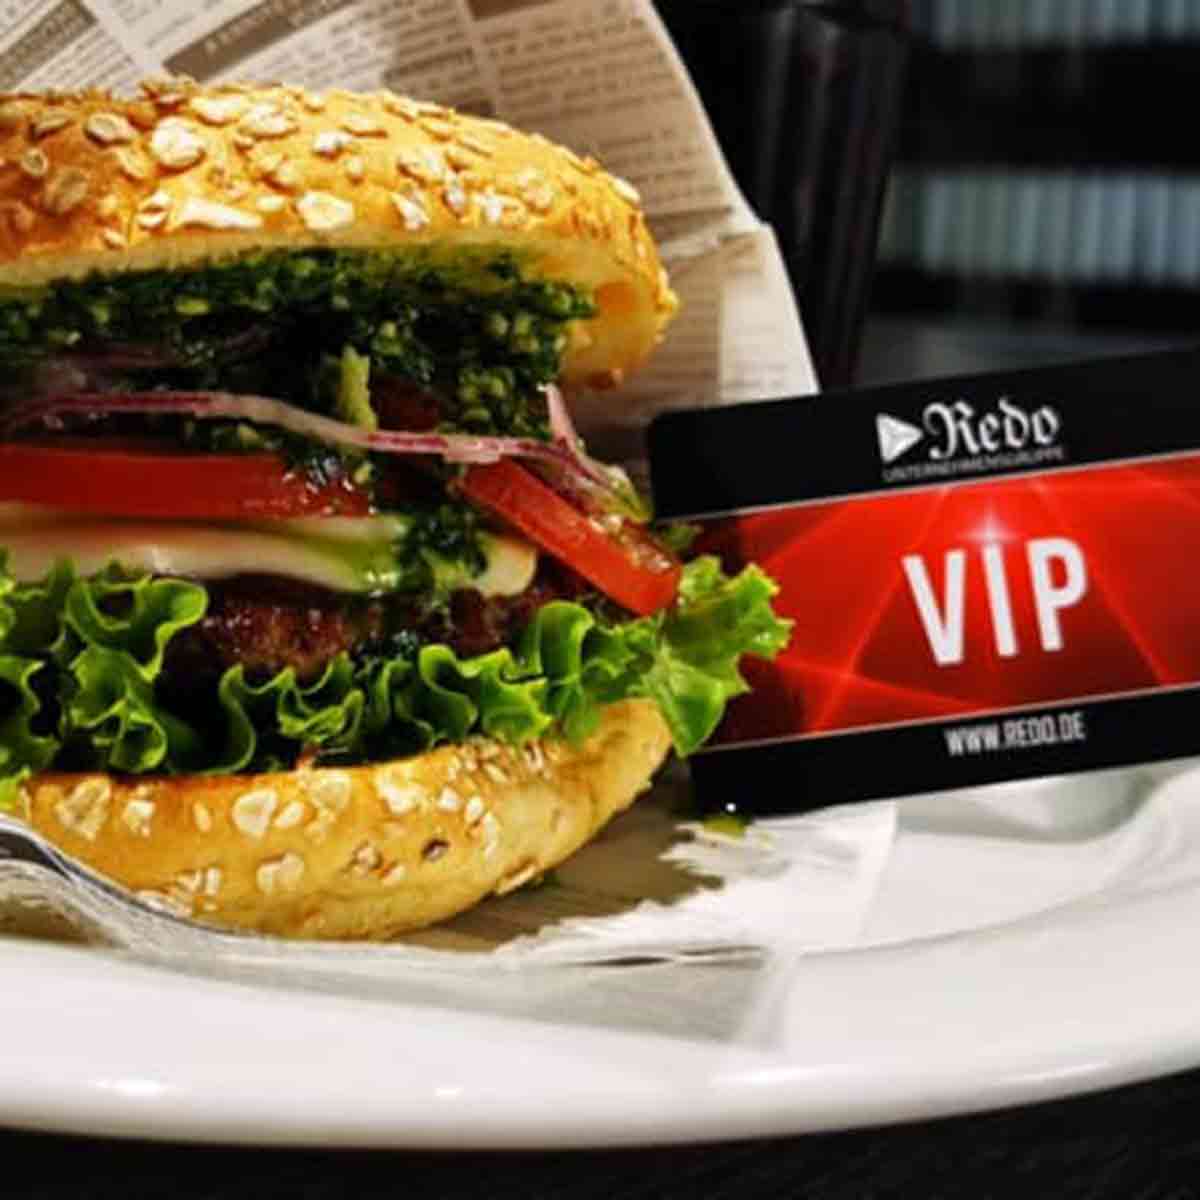 Redo-Burger mit einer drapierten VIP-Kundenkarte